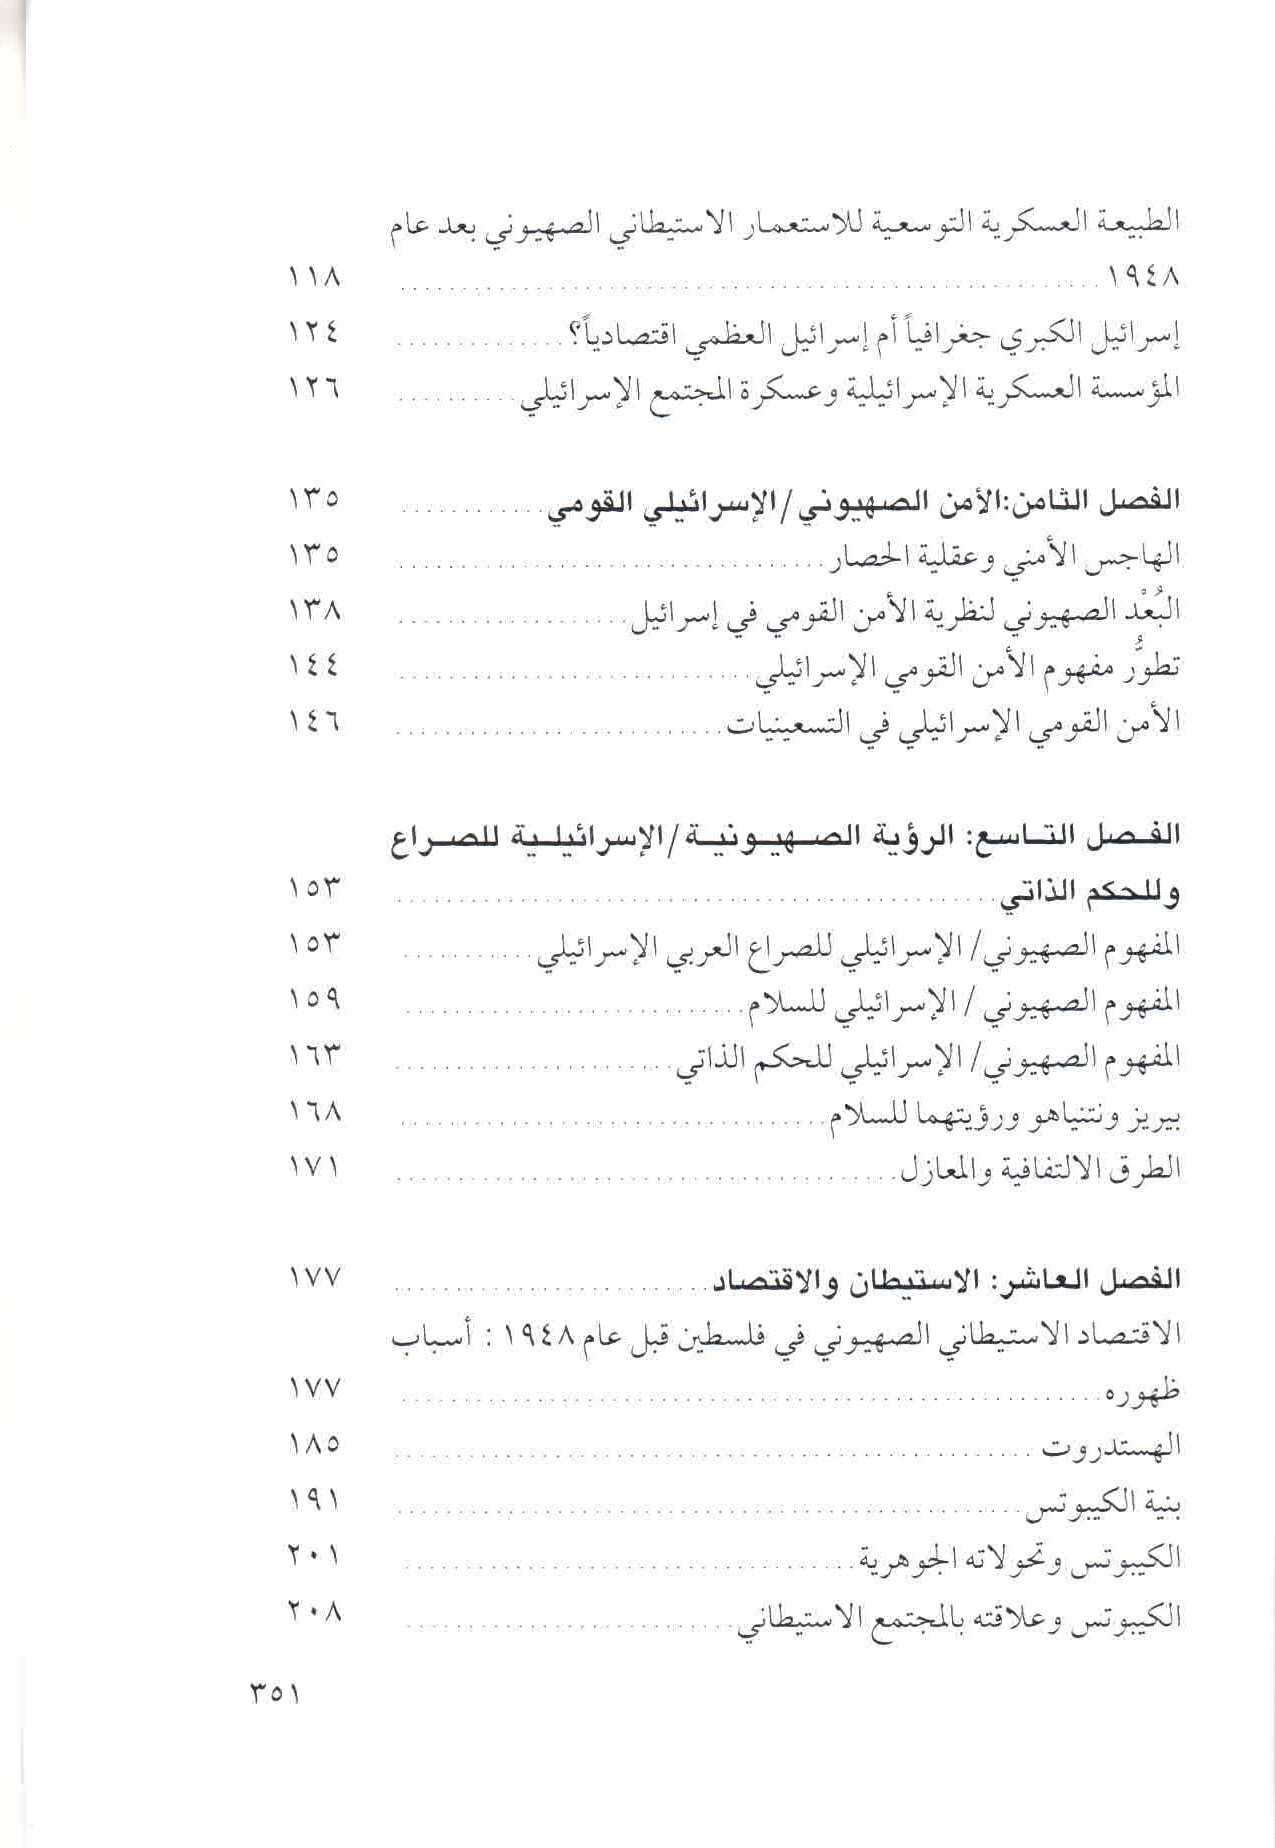  قائمة محتويات كتاب الصهيونية والعنف ص. 351.